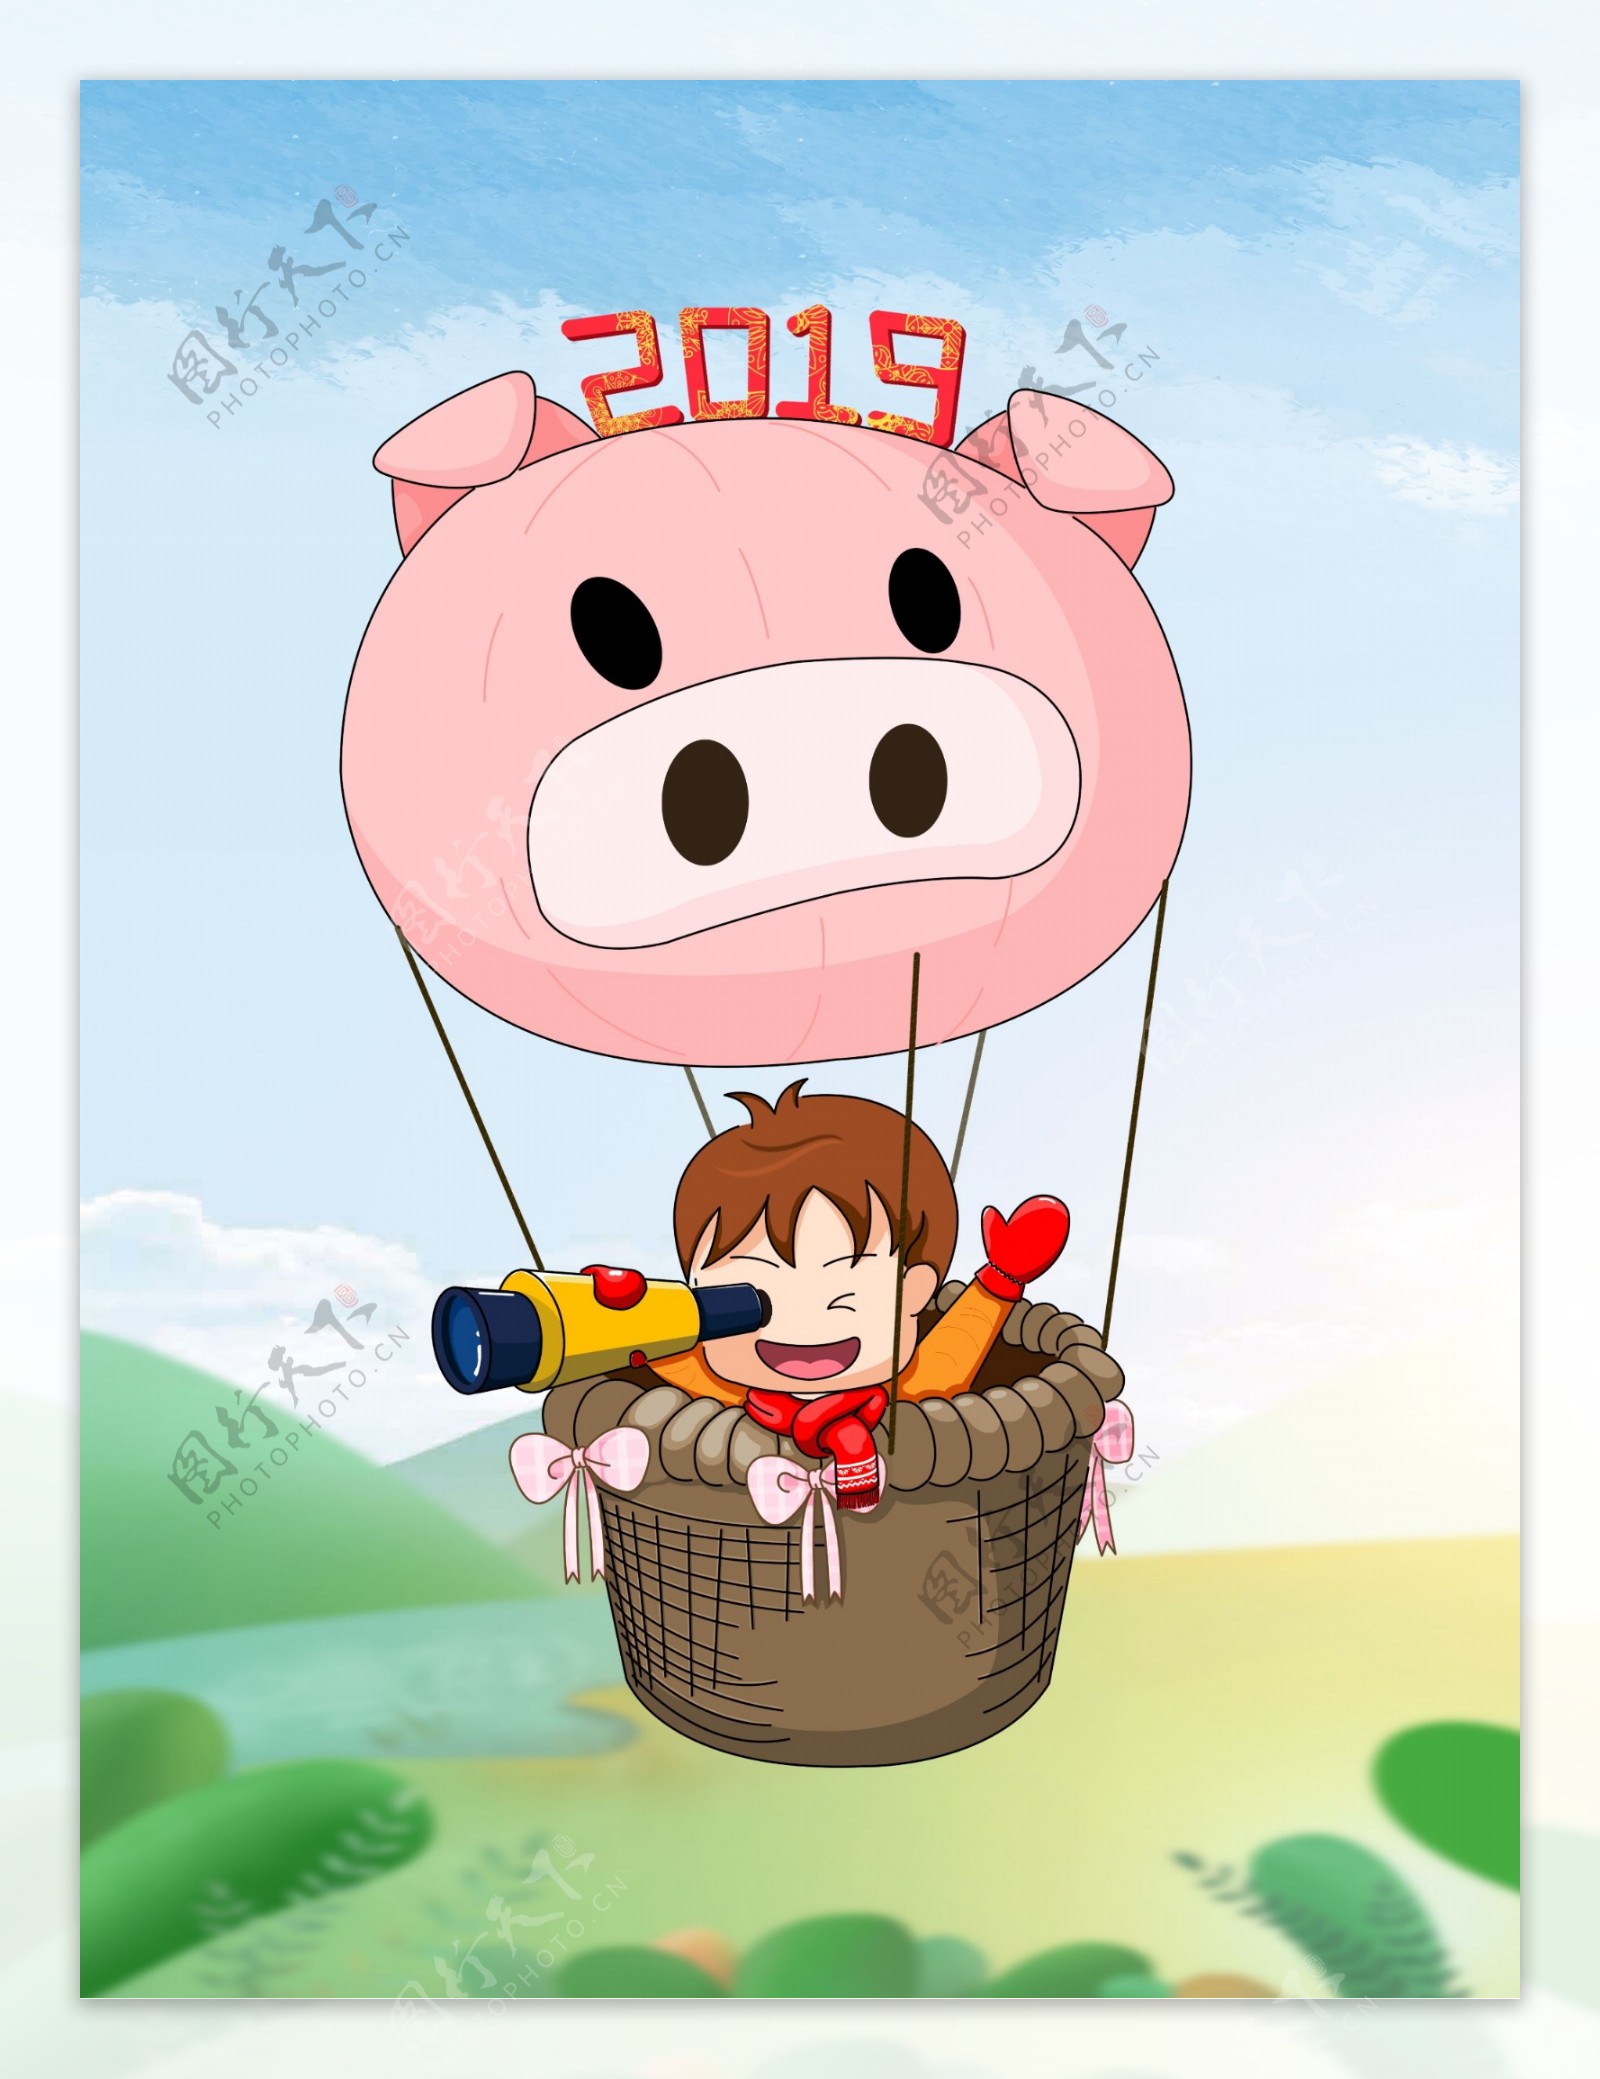 原创2019猪年热气球周游世界